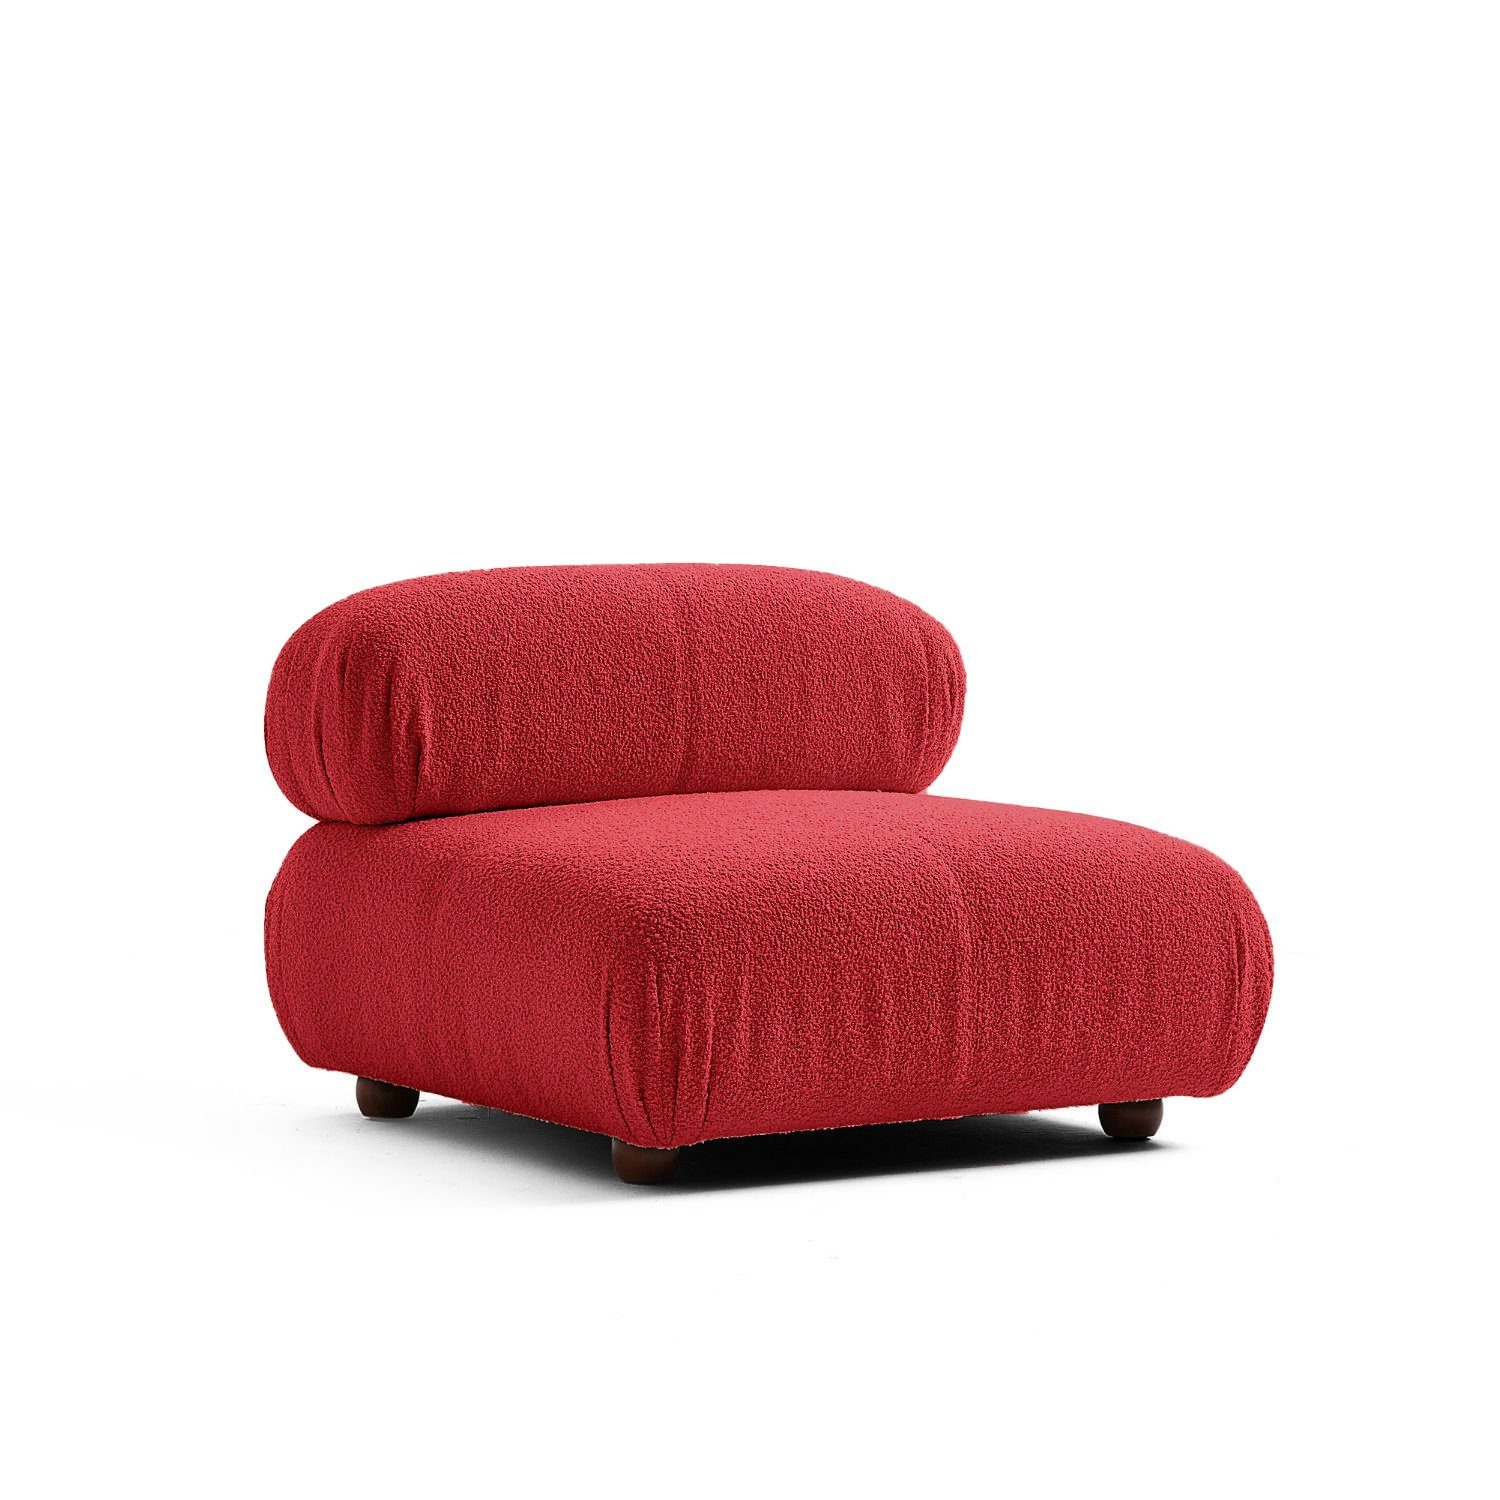 Touch Komfortschaum Sofa aus Aufbau Sitzmöbel Kirschrot-Lieferung und im Preis enthalten! neueste Knuffiges Generation me